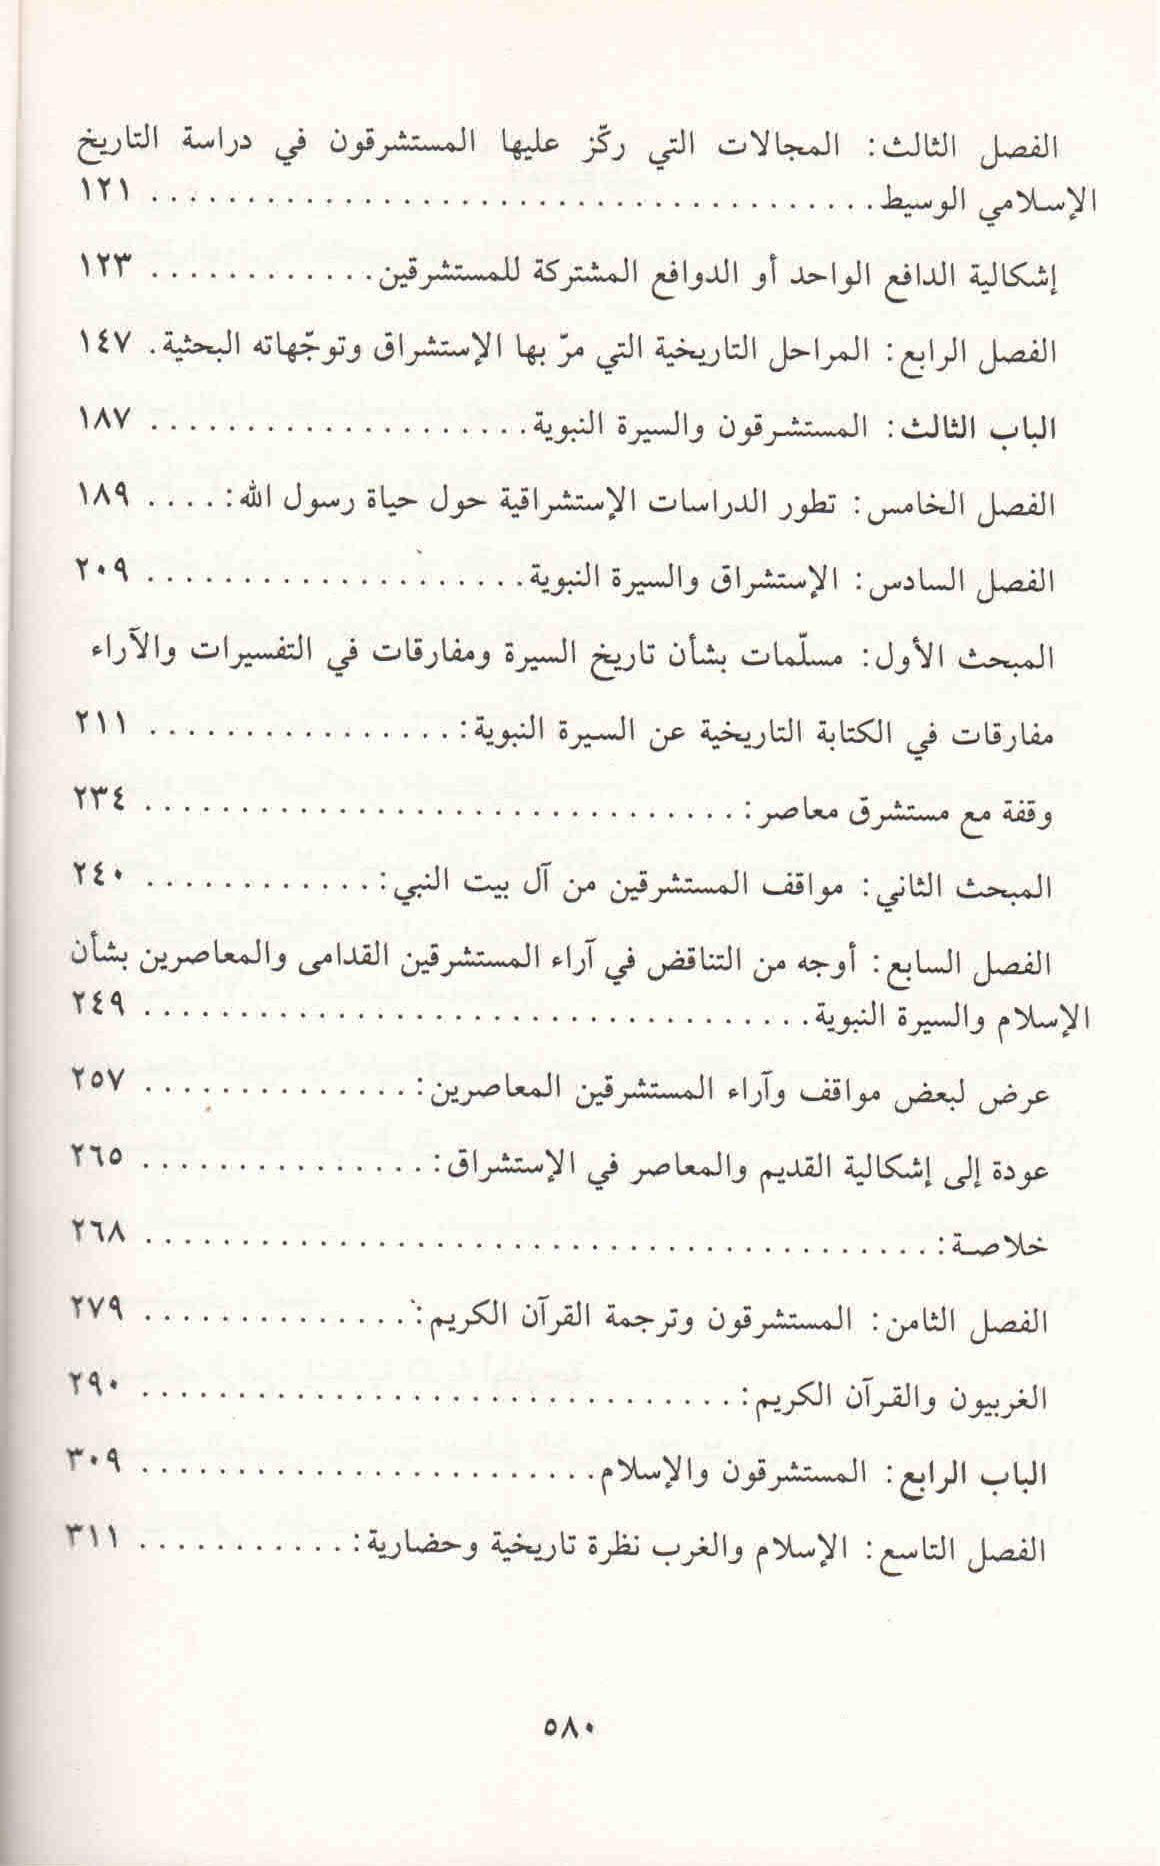 ص. 580 قائمة محتويات كتاب الإستشراق في التاريخ